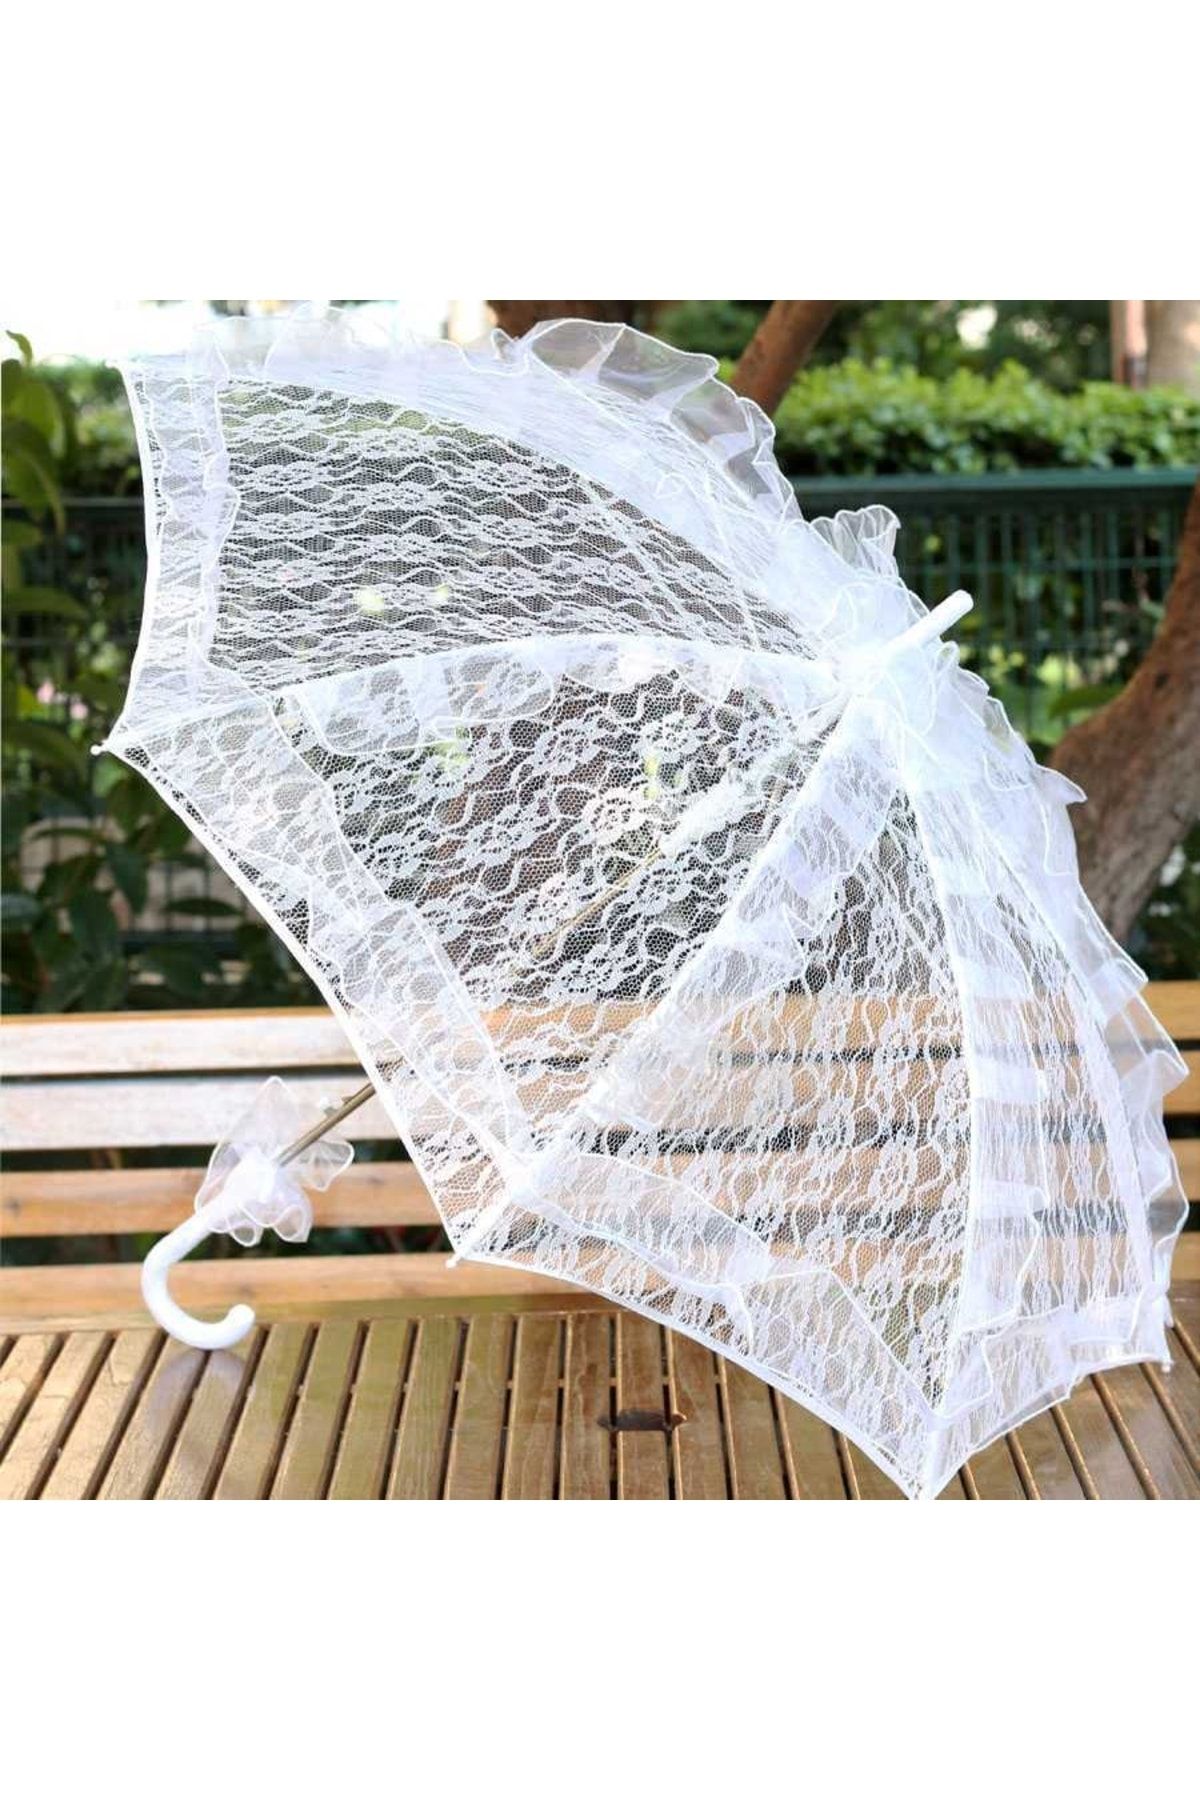 Gelince Alışveriş Beyaz Dantelli Şemsiye Fotoğraf Çekimi Için Gelin Şemsiyesi